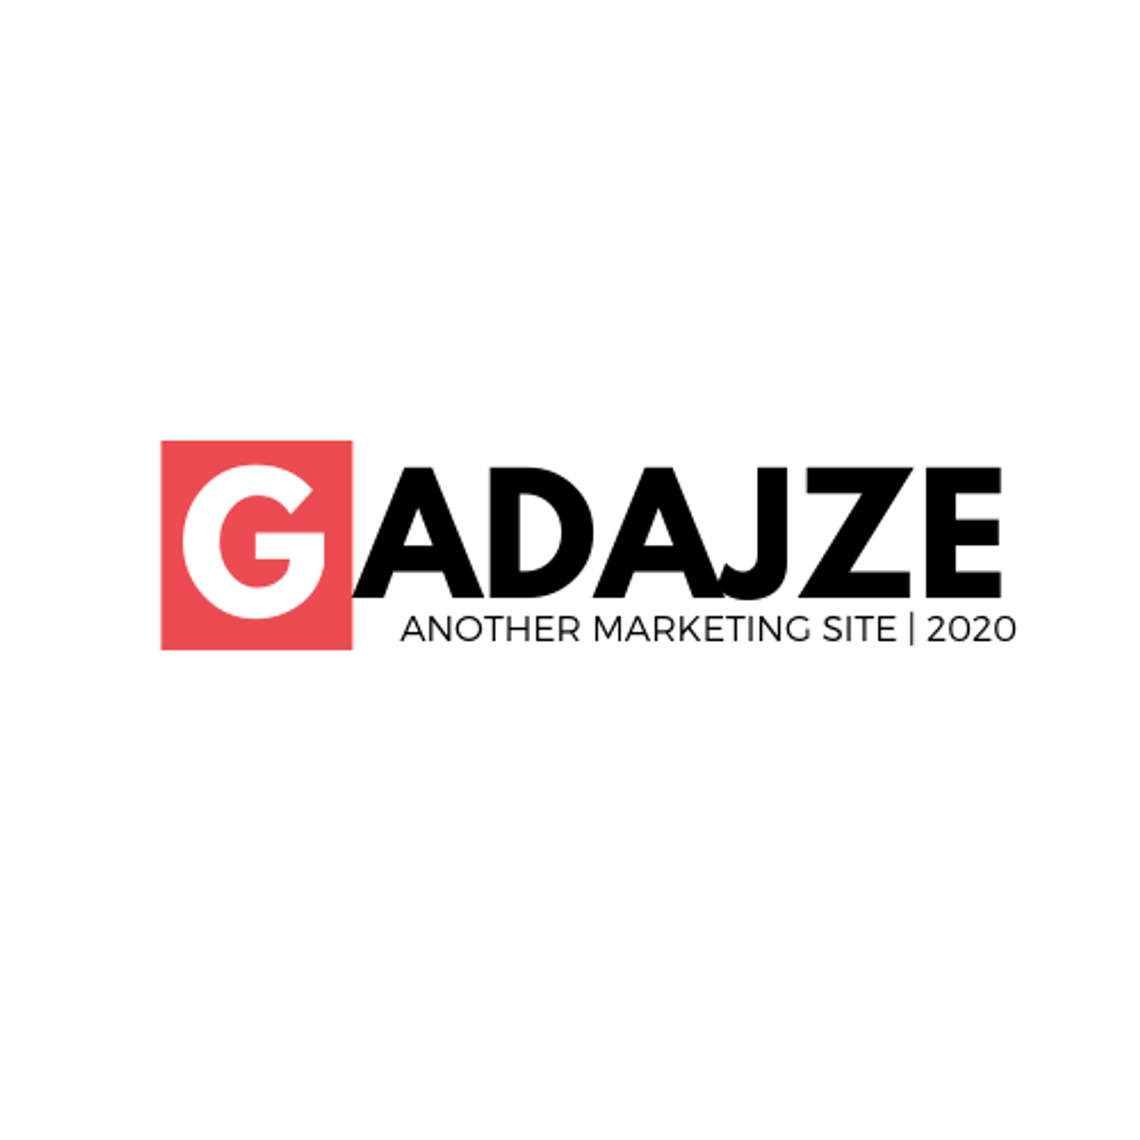 Gadajze.pl